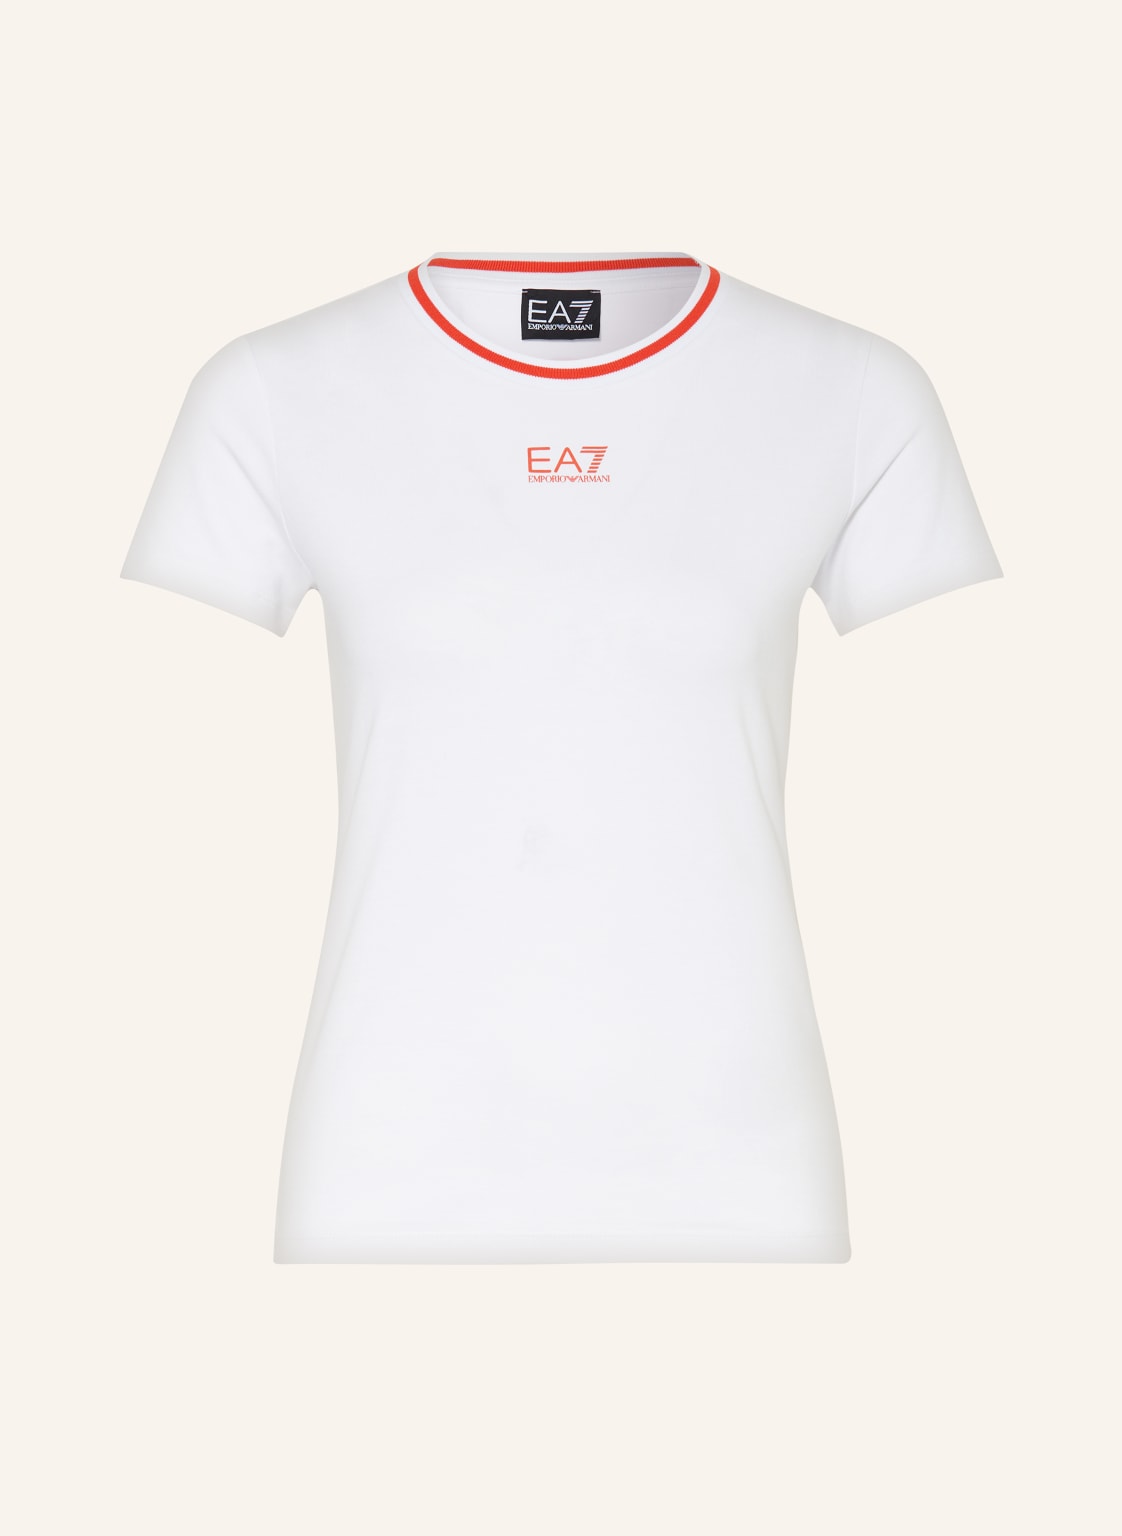 ea7 Emporio Armani T-Shirt weiss von EA7 EMPORIO ARMANI